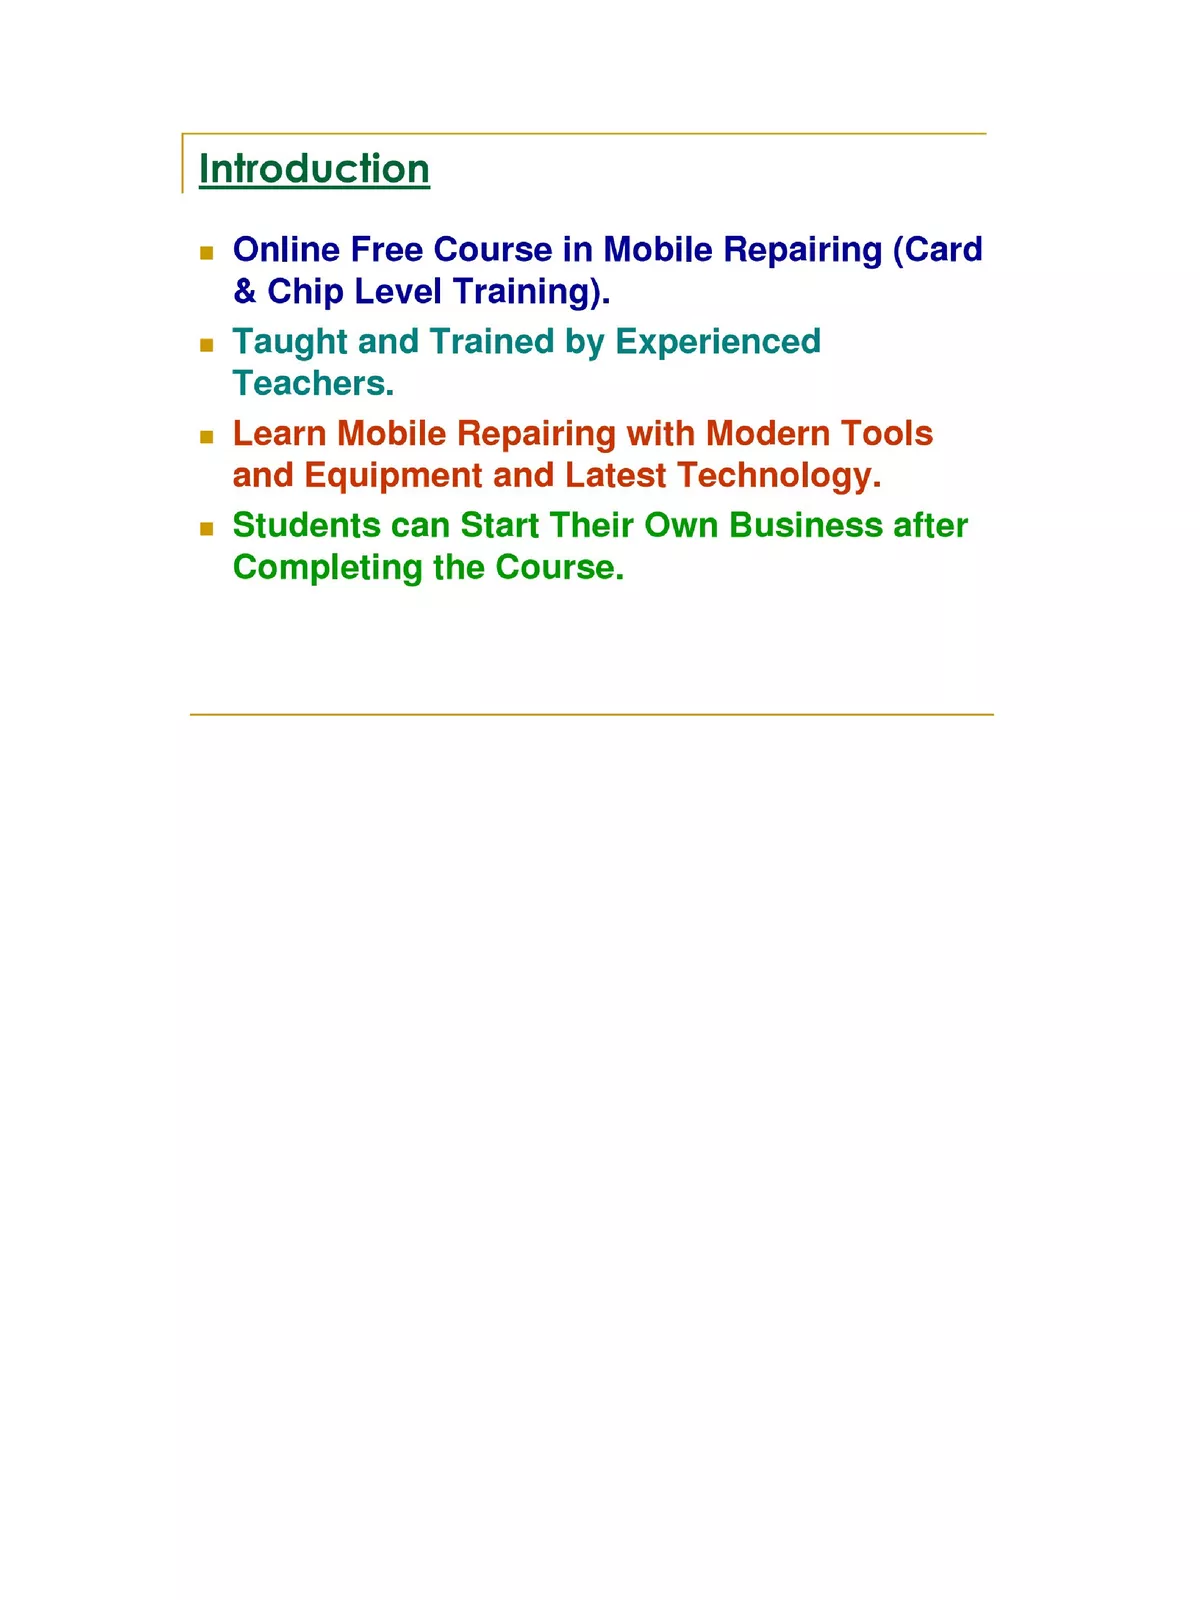 mobile-repairing-tools-name-list-pdf